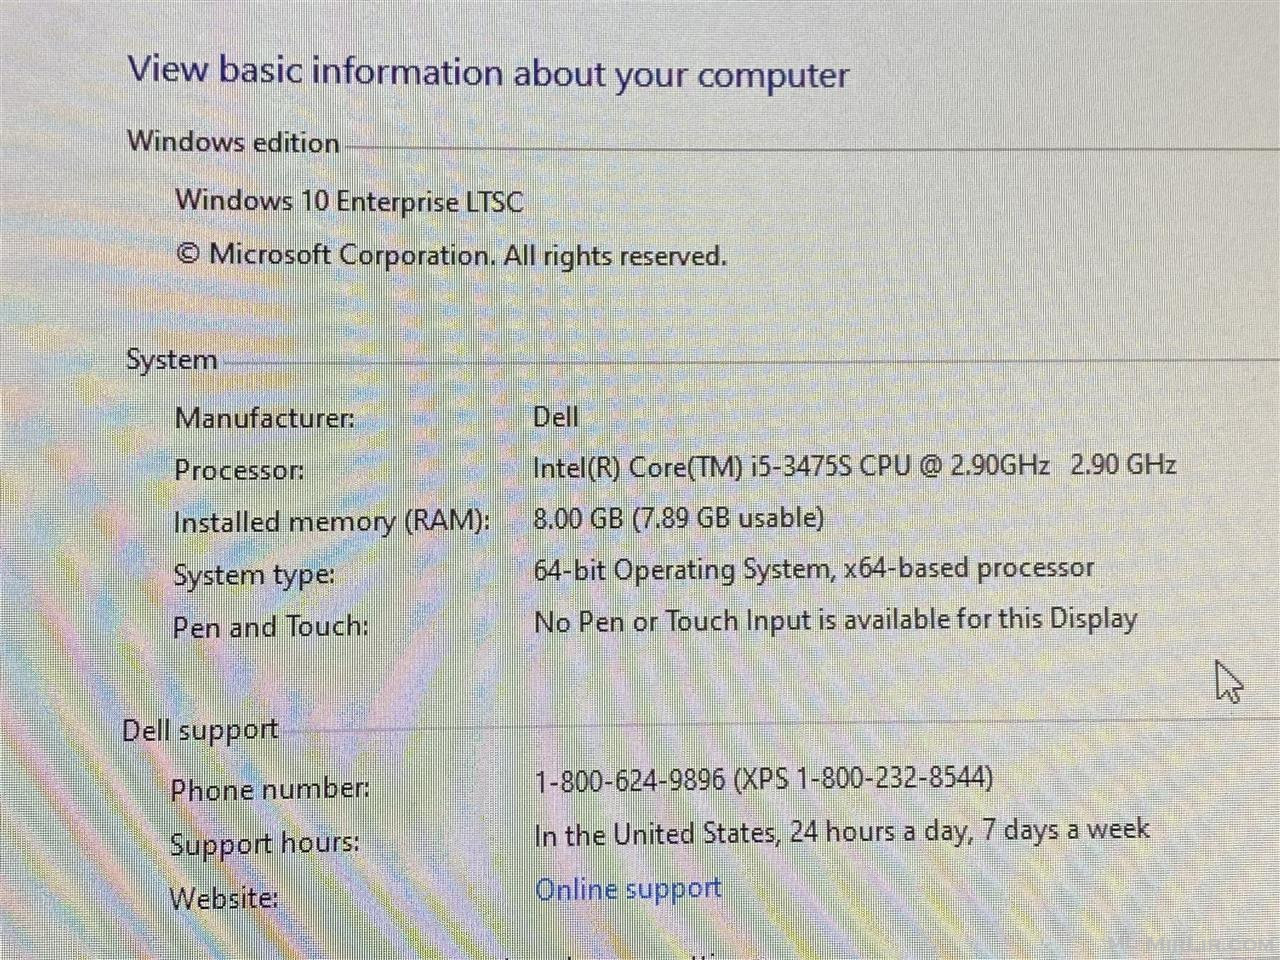 Kompjuter Dell i5-3475s 111gb ssd 300gb hdd